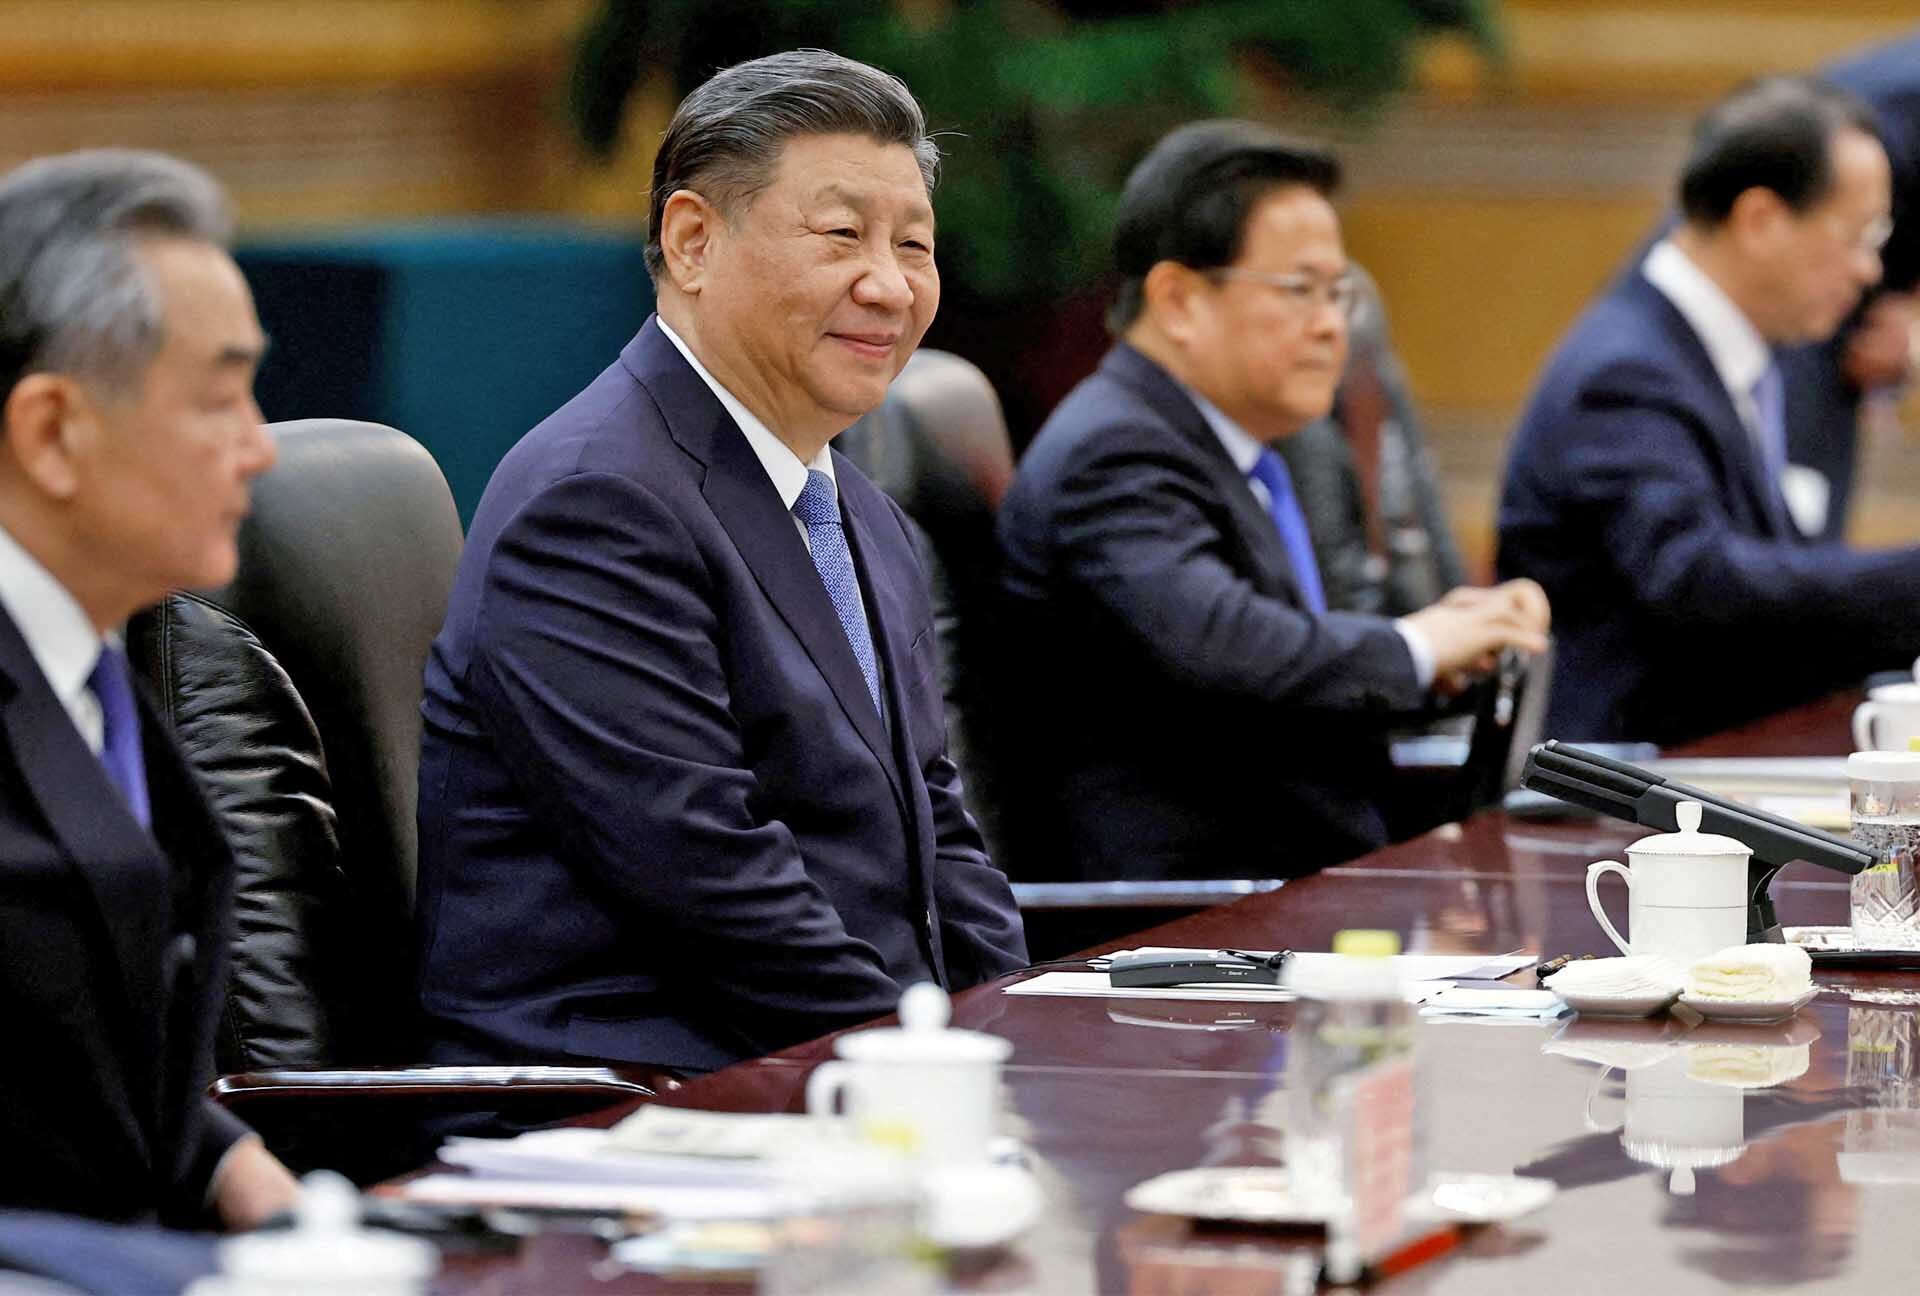 สี จิ้นผิง ย้ำอีกลุยแผน “รวมชาติ” ผู้นำไต้หวันเตือนจีนหวัง “แทรกแซง” การเลือกตั้ง